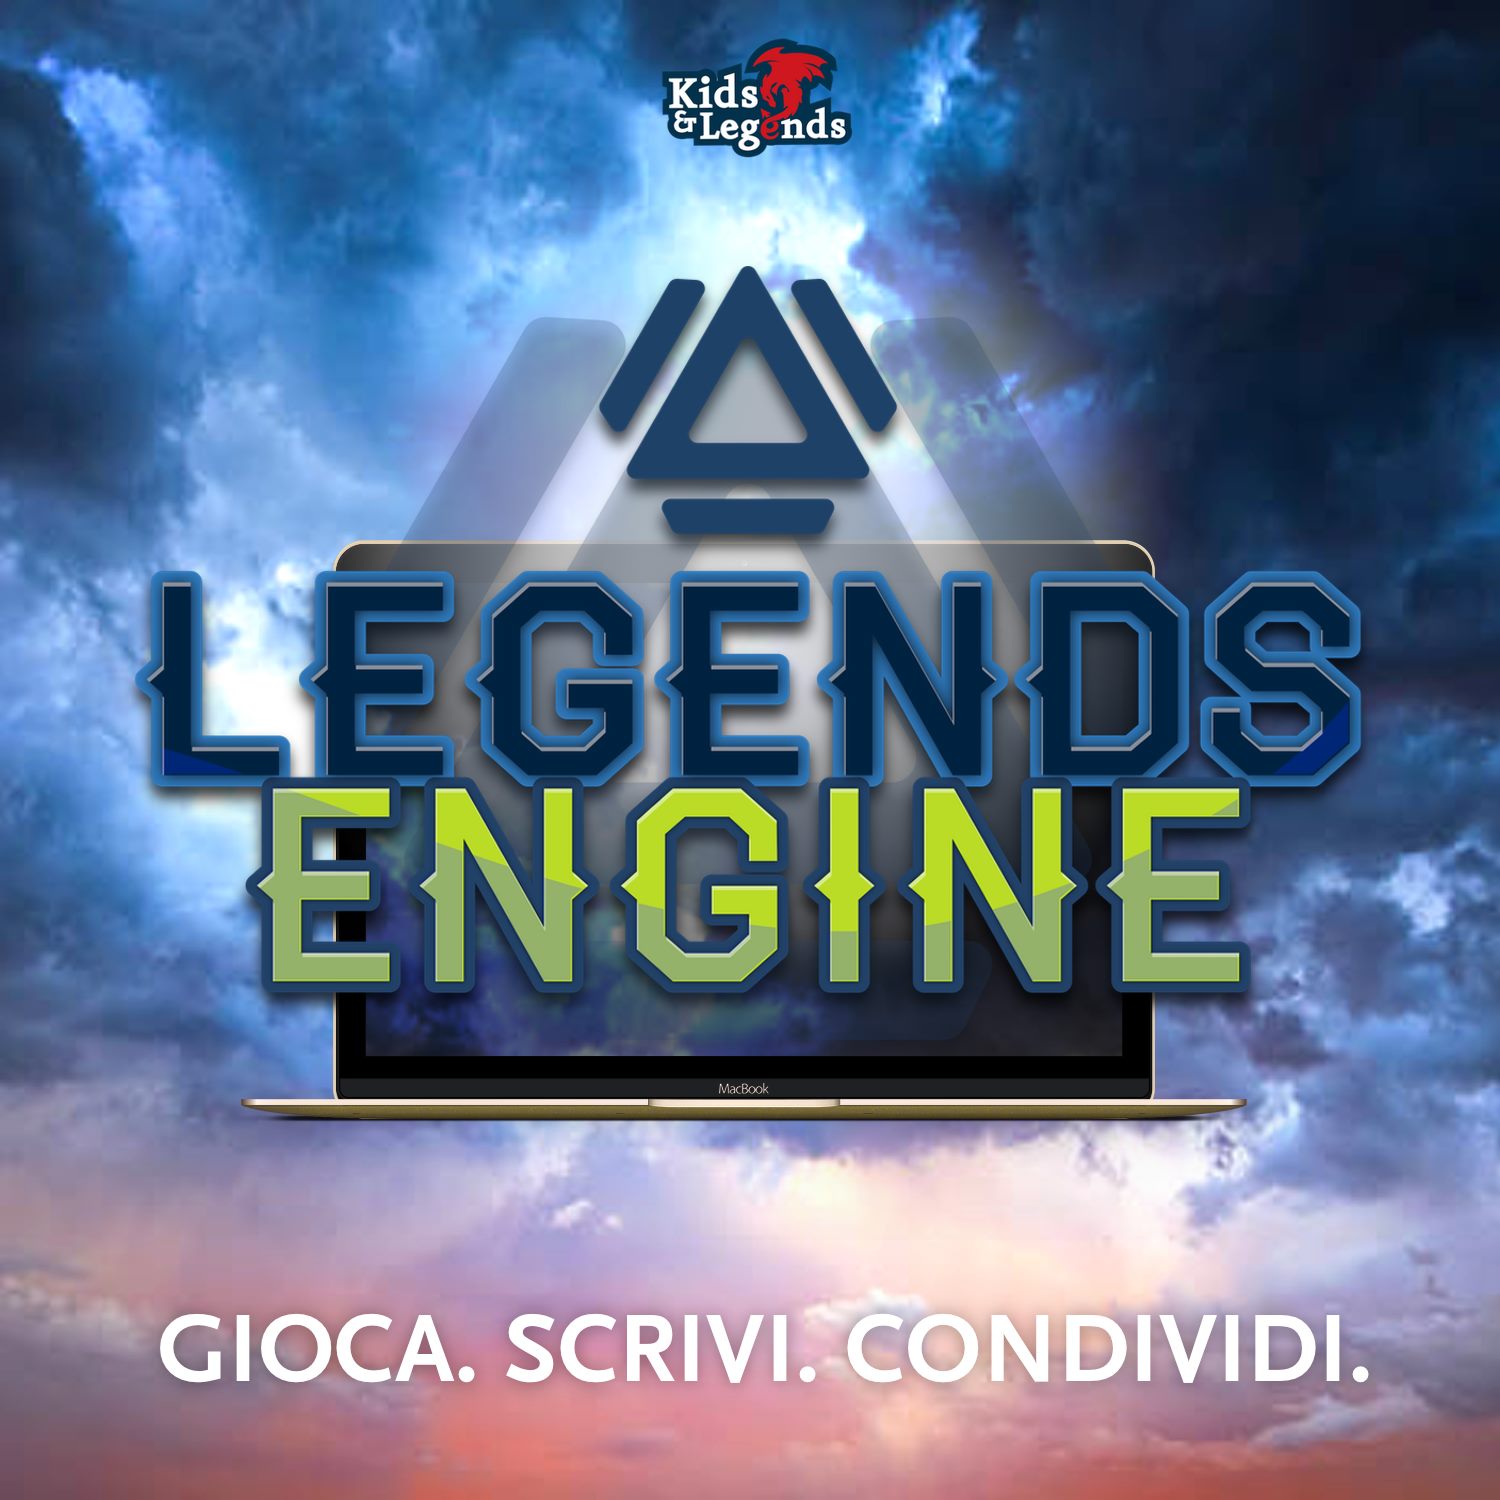 Legends Engine by Kids & Legends